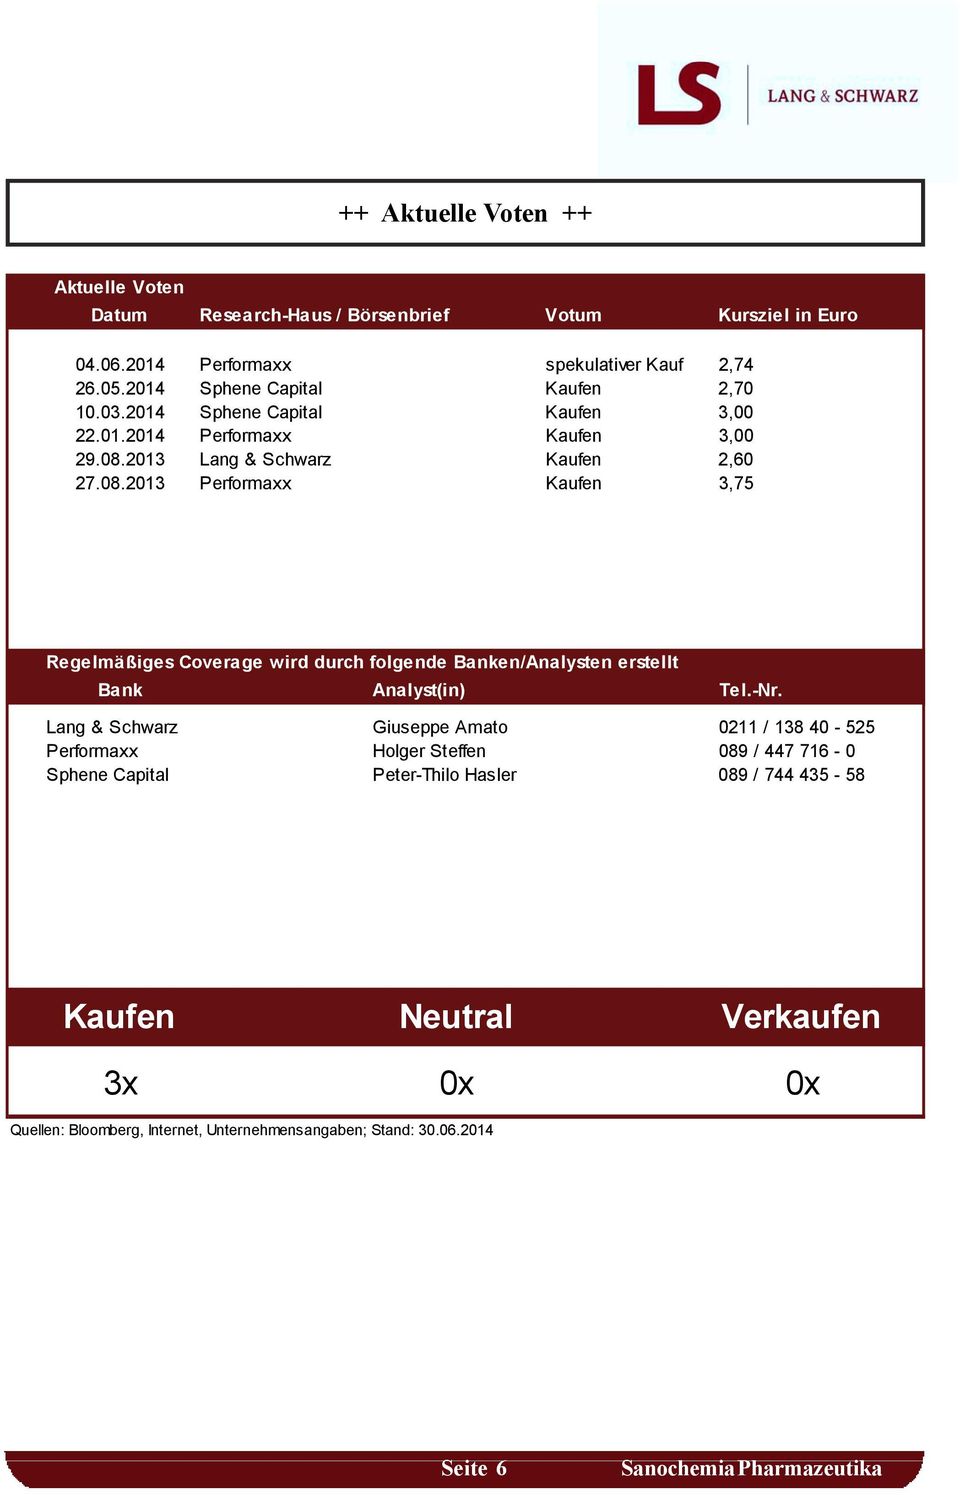 2013 Lang & Schwarz Kaufen 2,60 27.08.2013 Performaxx Kaufen 3,75 Regelmäßiges Coverage wird durch folgende Banken/Analysten erstellt Bank Analyst(in) Tel.-Nr.